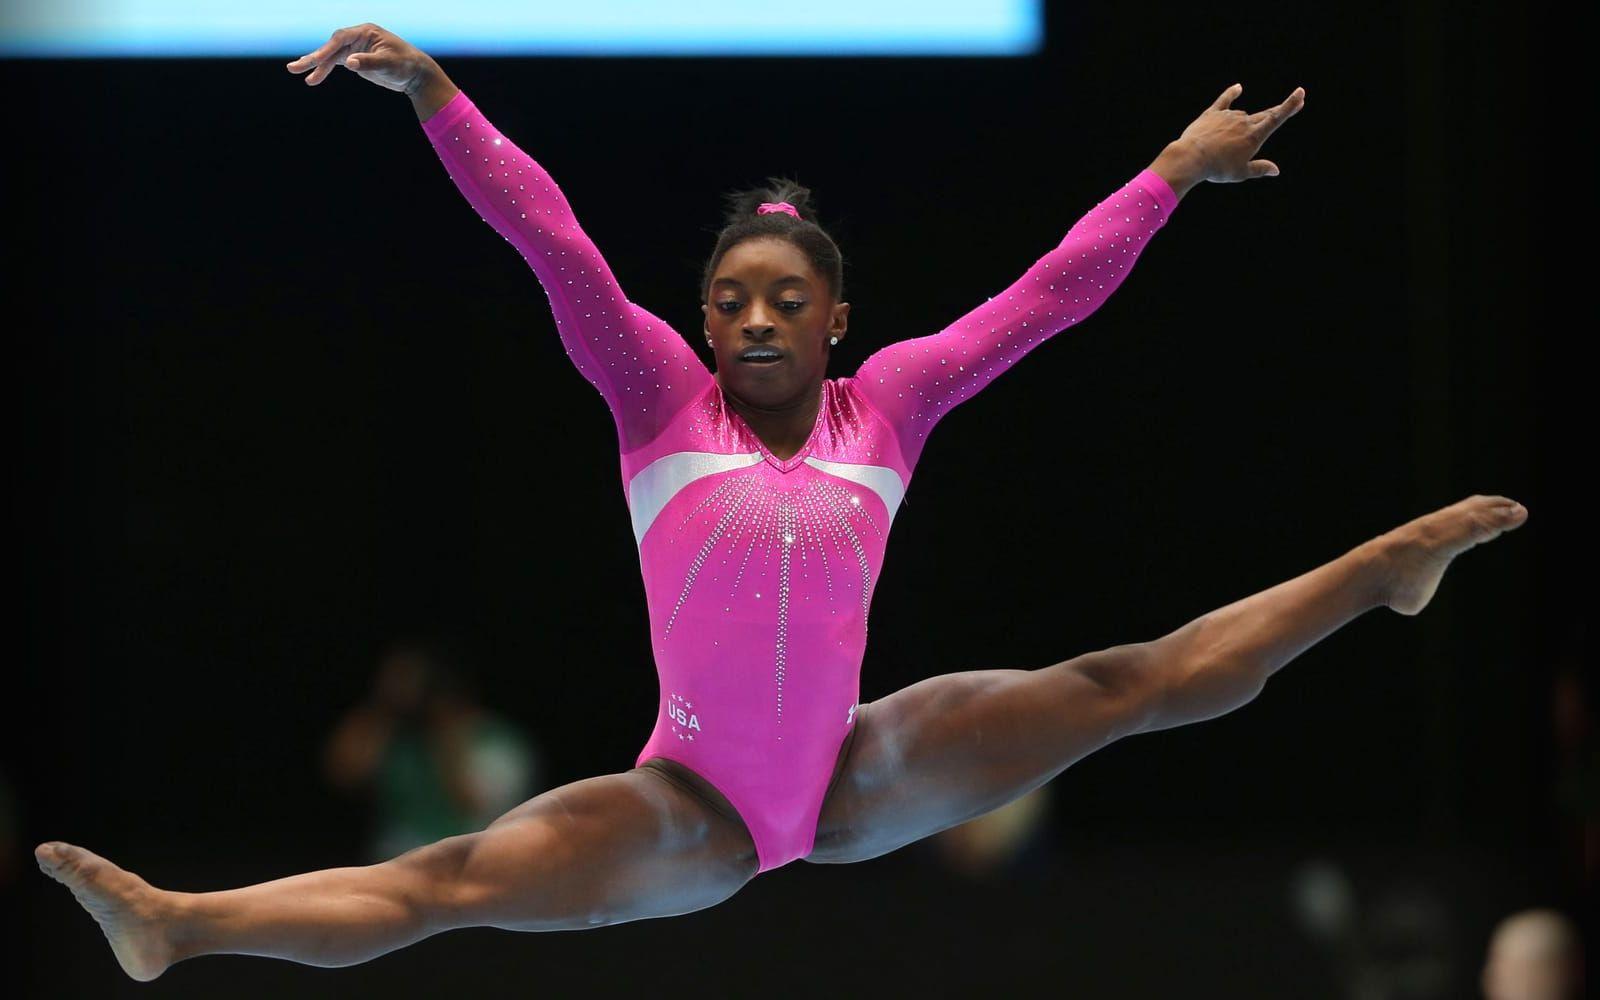 Simone Biles, USA. Kan vinna fem OS-guld i Rio om allt stämmer. 19-åringen har redan vunnit tio VM-guld – fler än någon annan kvinnlig gymnast. En otroligt sevärd artist som trotsar tyngdlagen när hon är ute på mattan. Foto: Bildbyrån